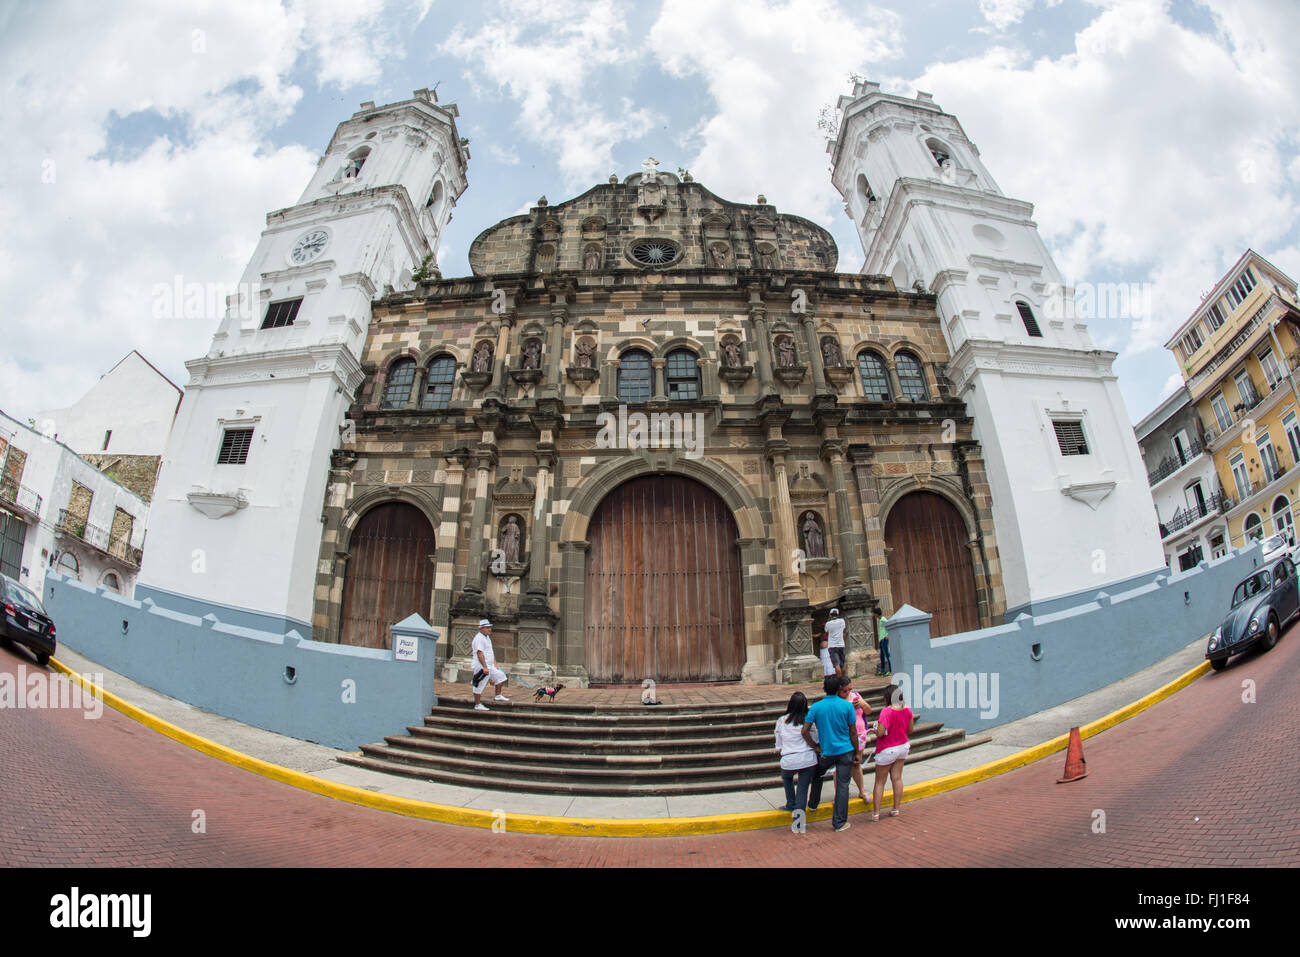 La ville de Panama, Panama--Catedral Metropolitana sur le côté ouest de la Plaza de la Catedral. Plaza de la Catedral est la place centrale de l'historique quartier de Casco Viejo Panama City, Panama. Il est également connu sous le nom de Plaza de la Independencia et la Plaza Mayor. Banque D'Images